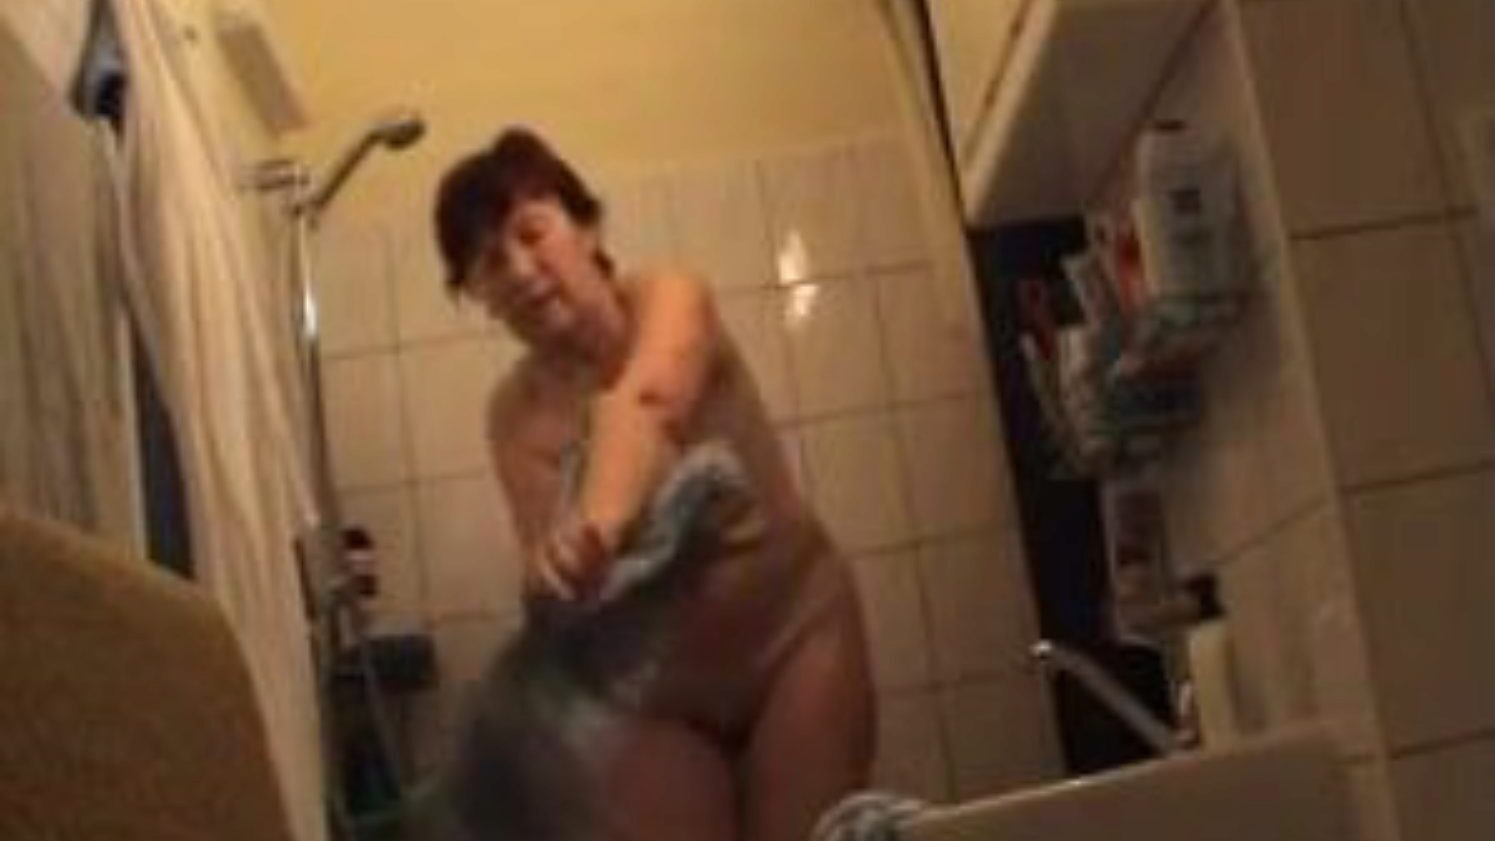 tysk mormor naken i badrummet, gratis tyskarnas porrvideoannons tysk mormor naken i badrummet filmscen på xhamster, den största sexrörssidan med massor av gratis tyskar naken mormor & mogna porrvids